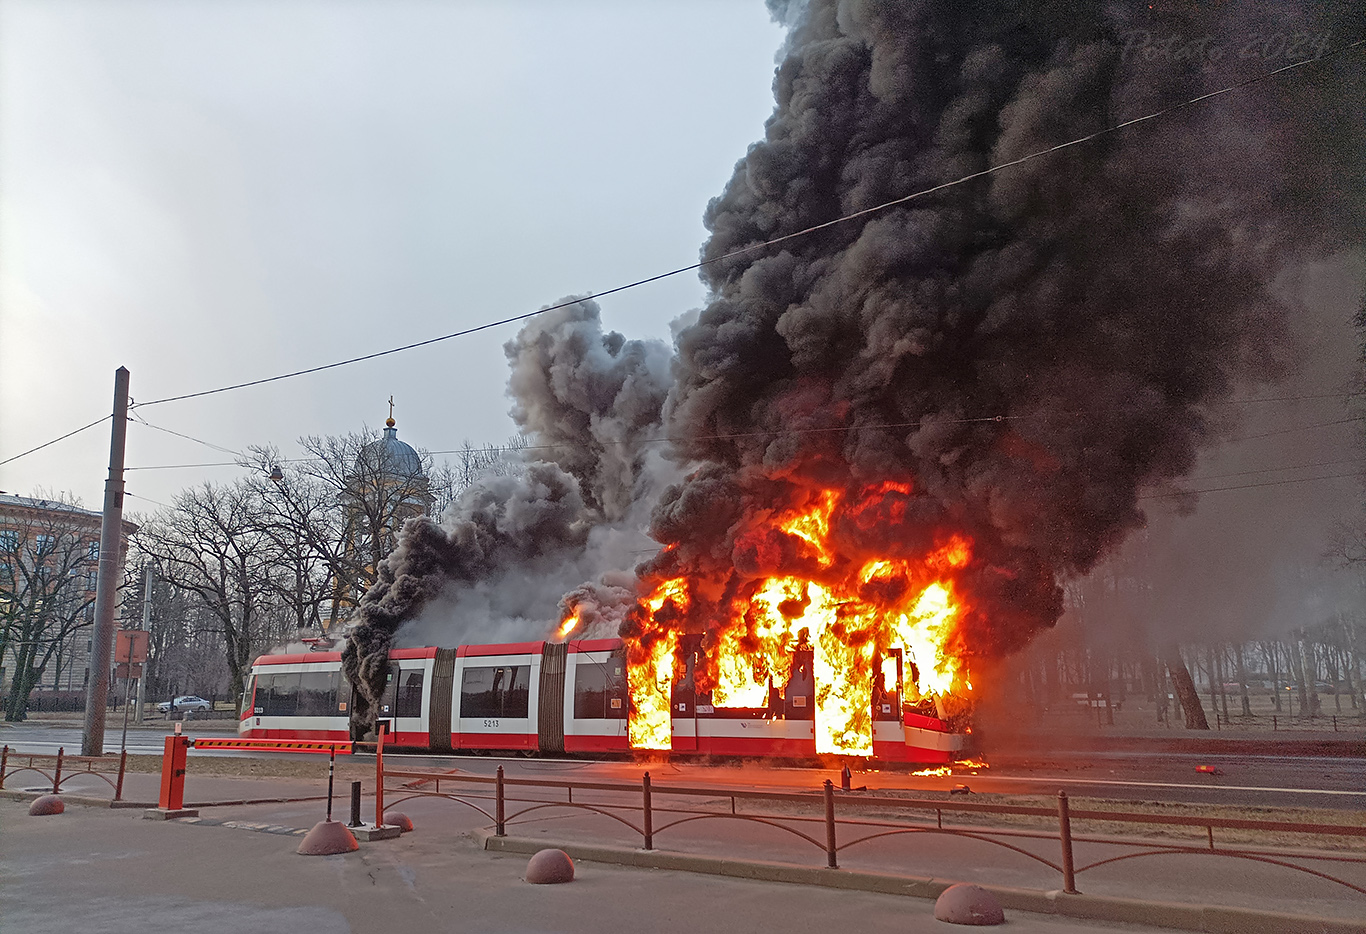 Saint-Pétersbourg, BKM 84300M N°. 5213; Saint-Pétersbourg — Incidents